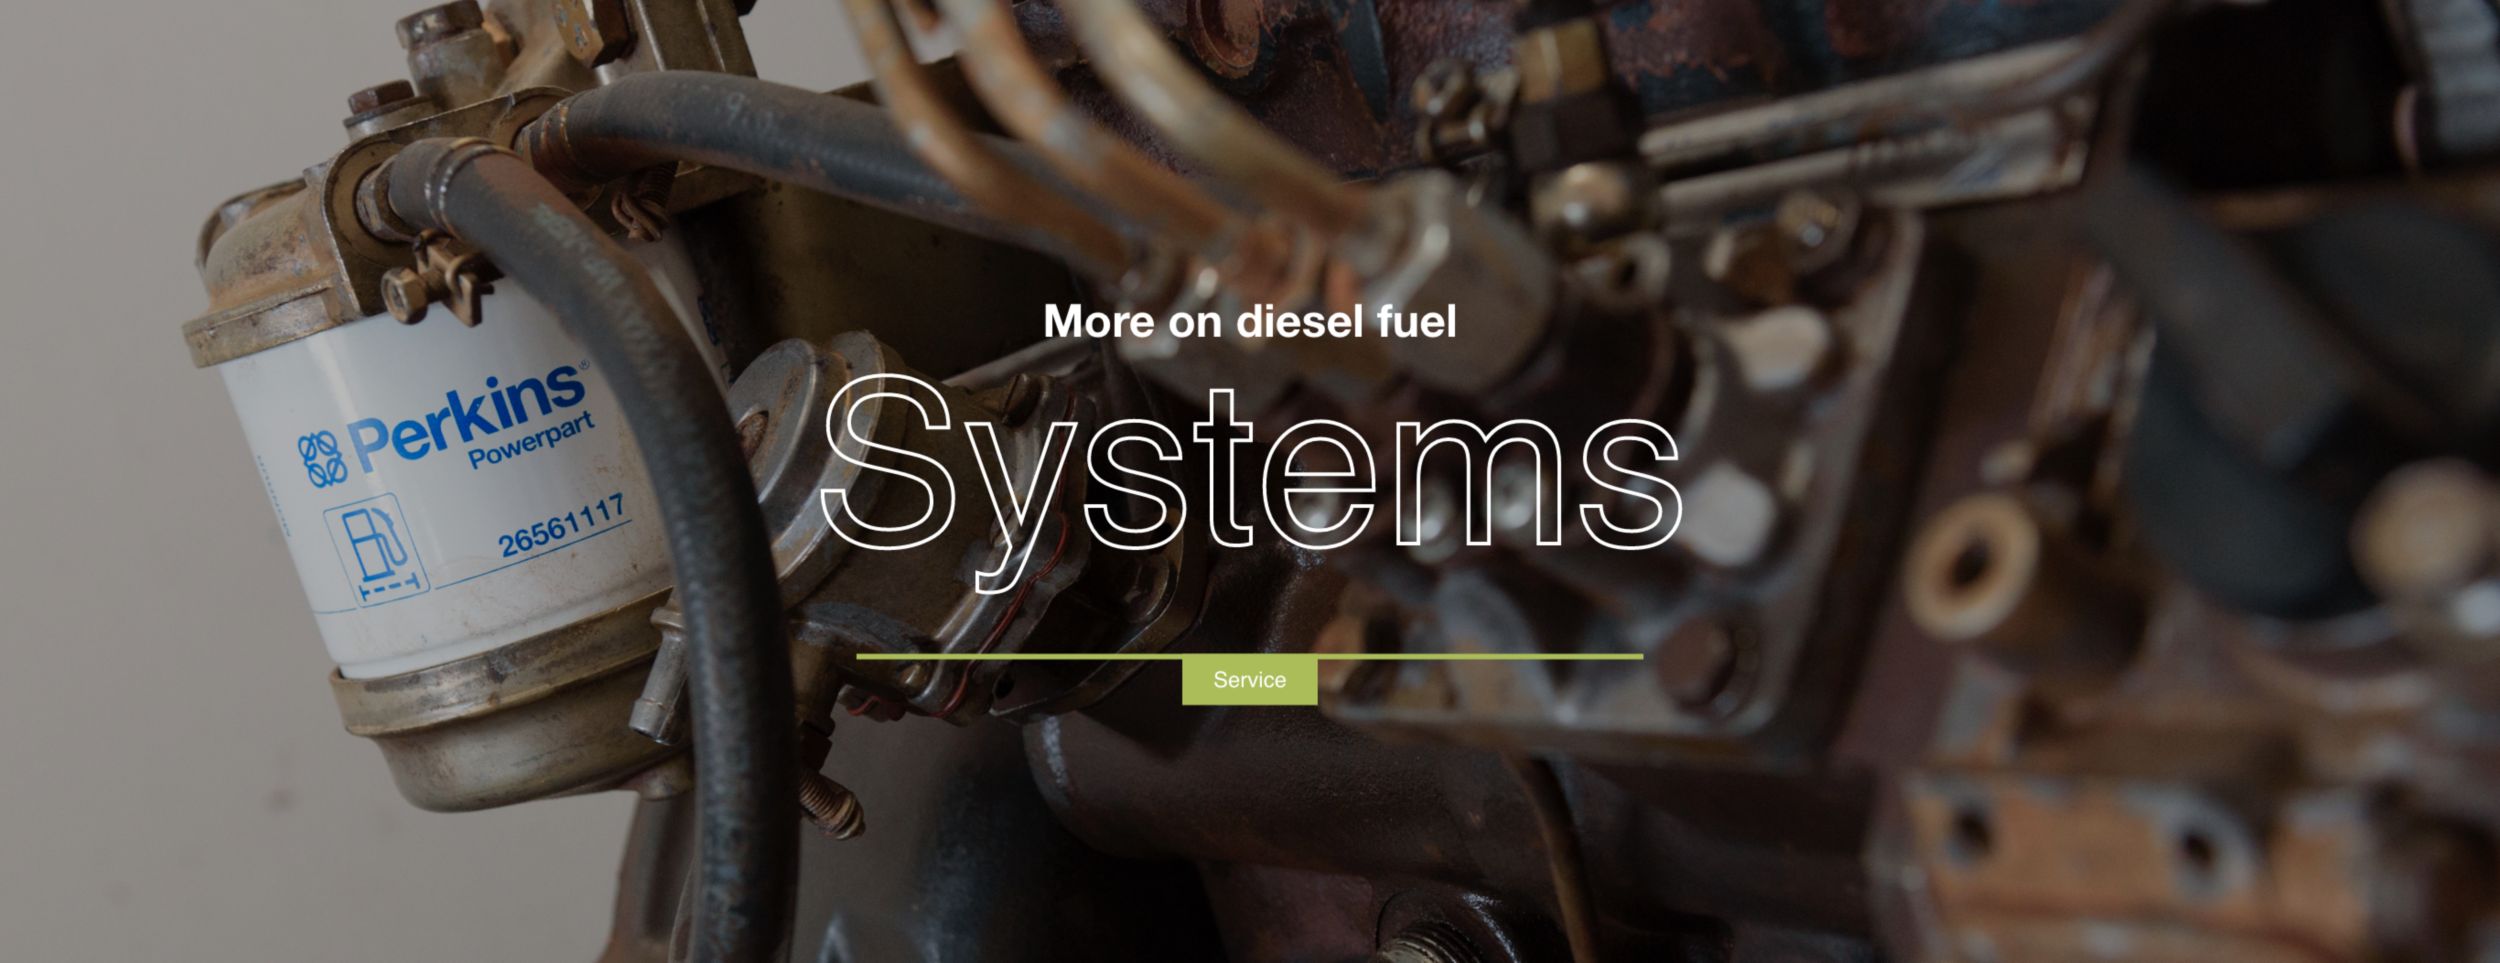 Diesel engines How diesel fuel systems work